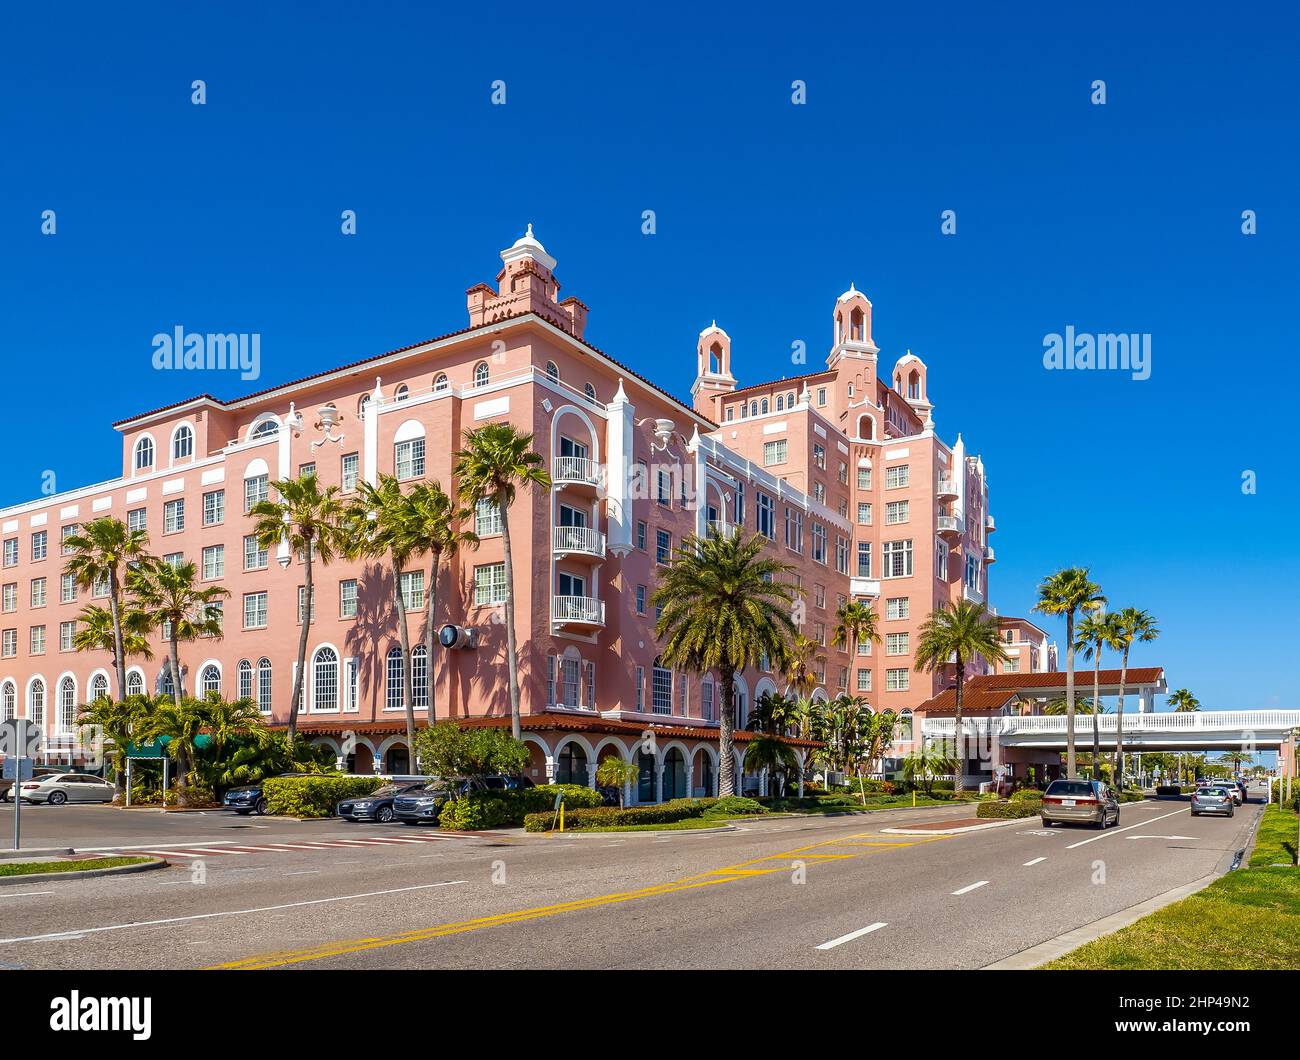 Das historische, elegante Luxushotel Don Cesar, auch bekannt als Pink Palace in St. Pete Beach, Florida, USA Stockfoto